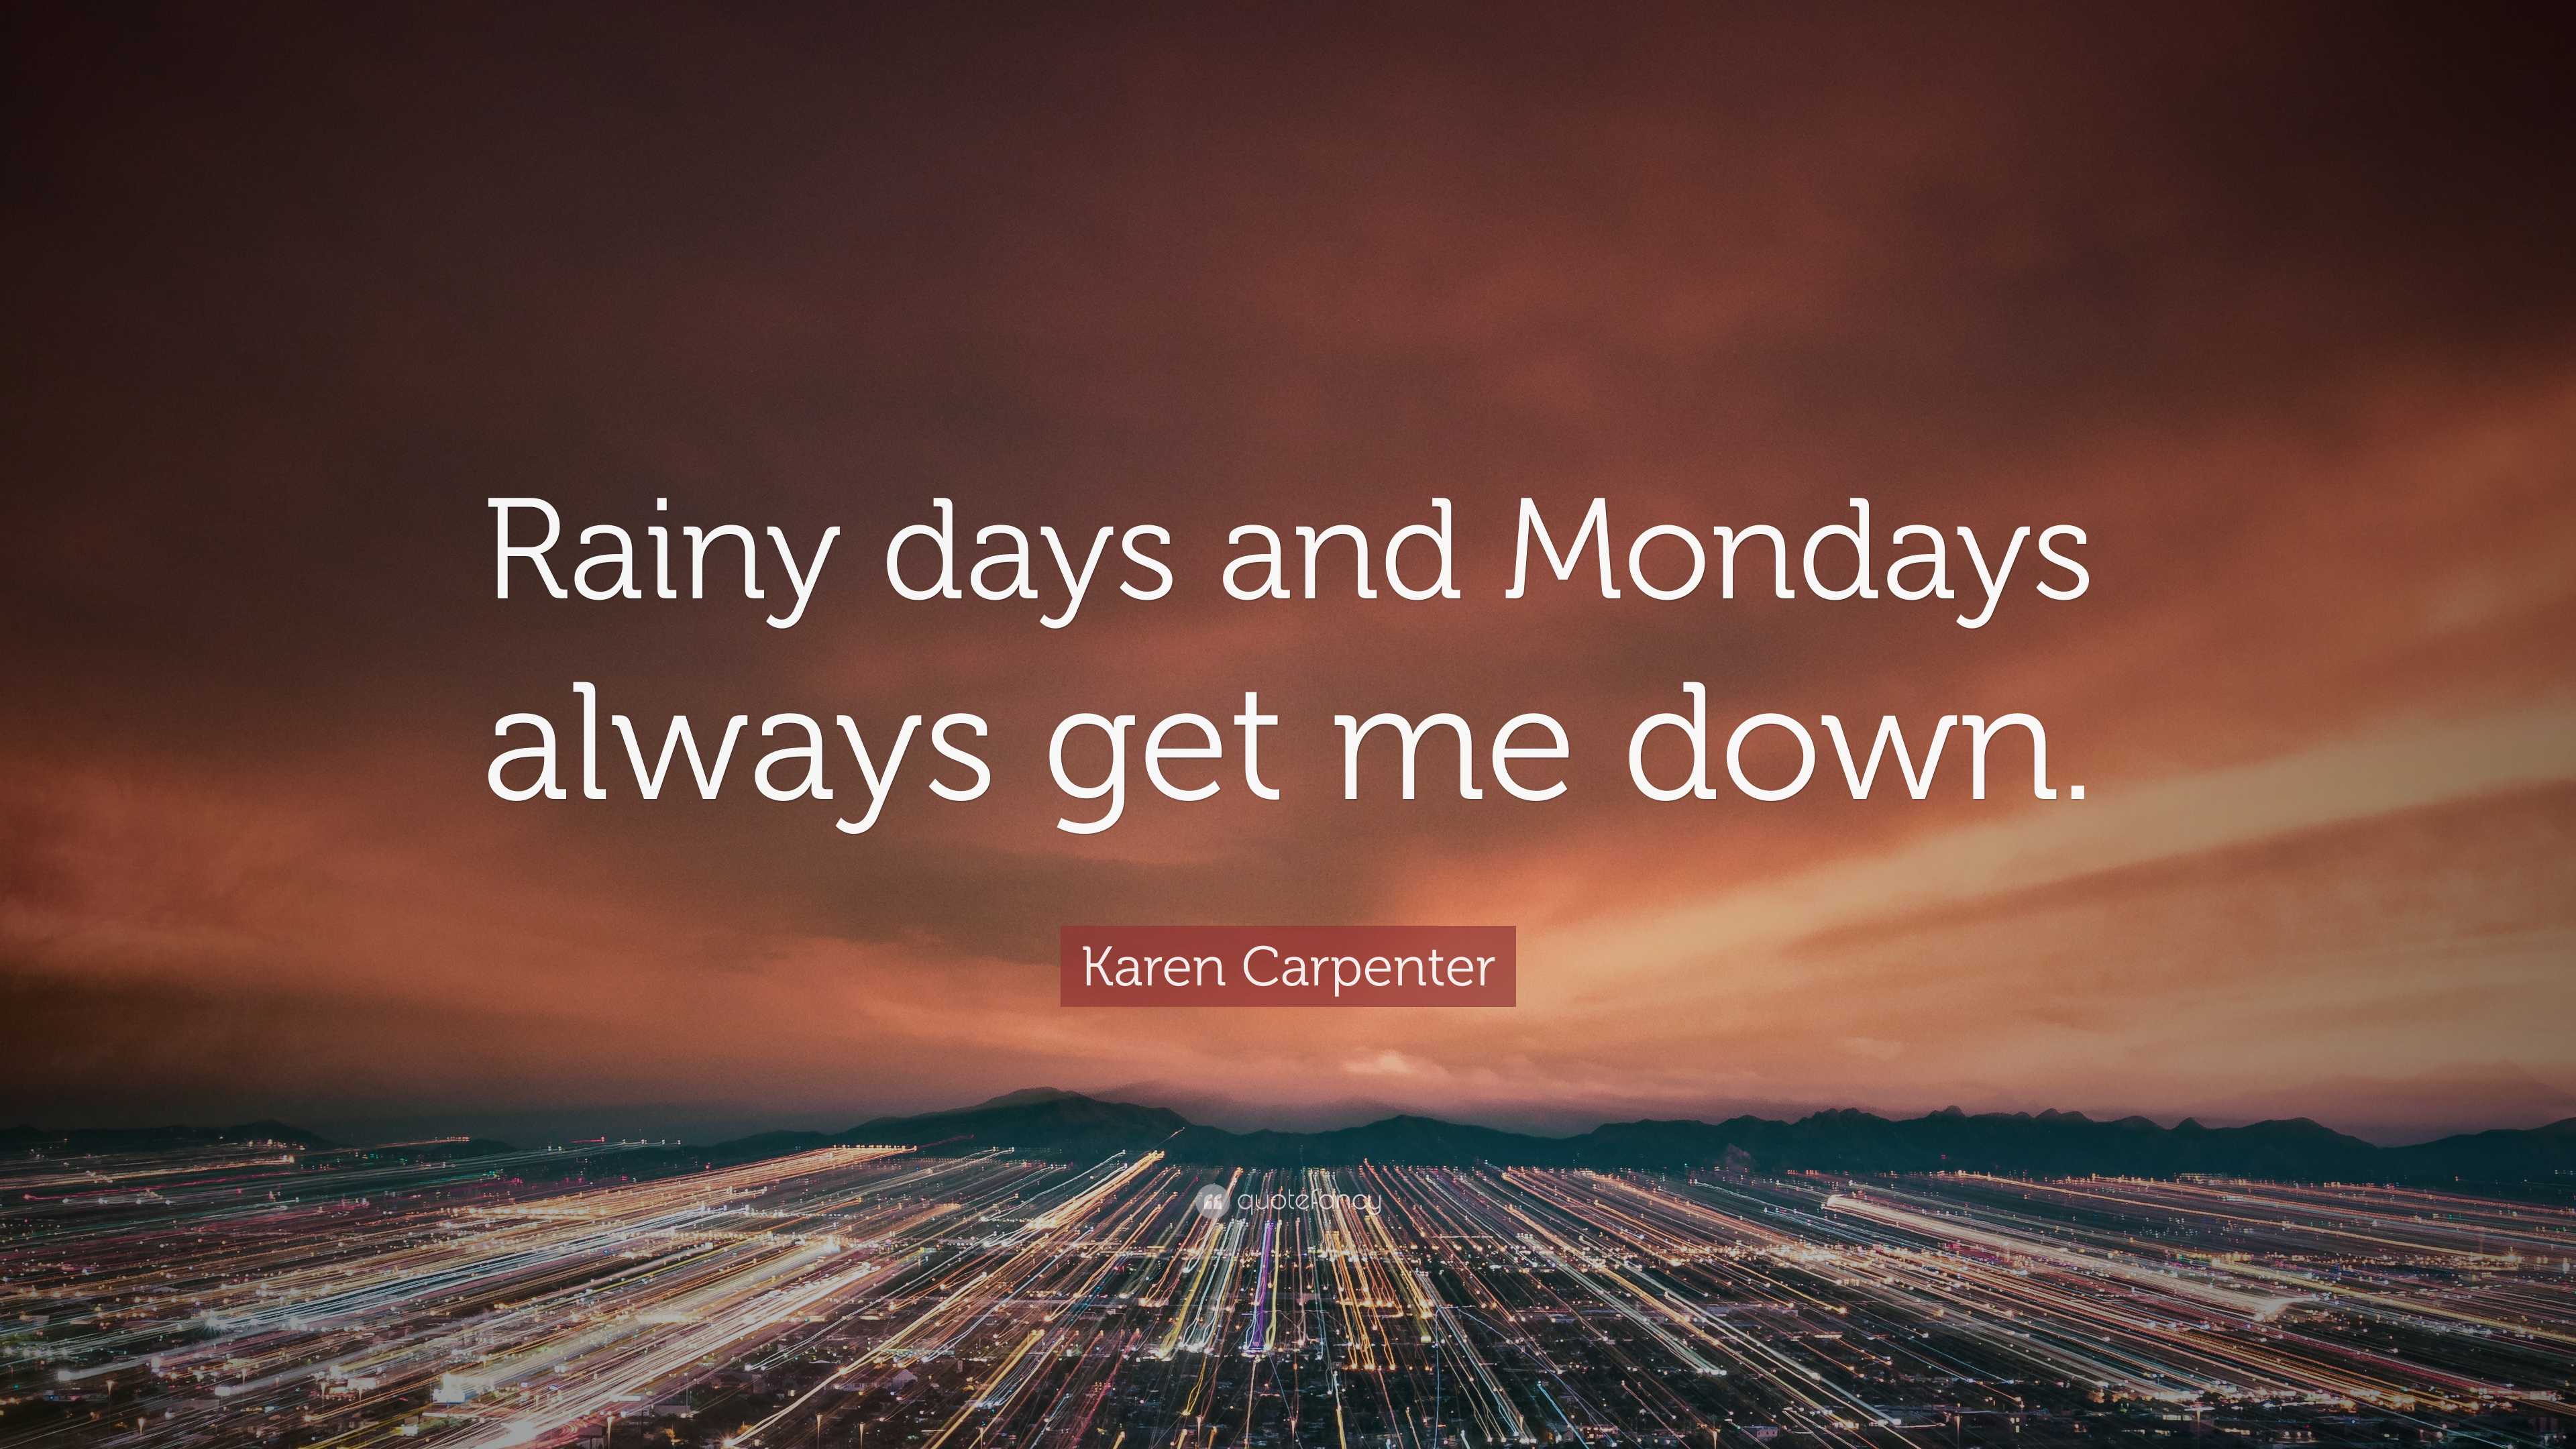 Rainy Days & Mondays